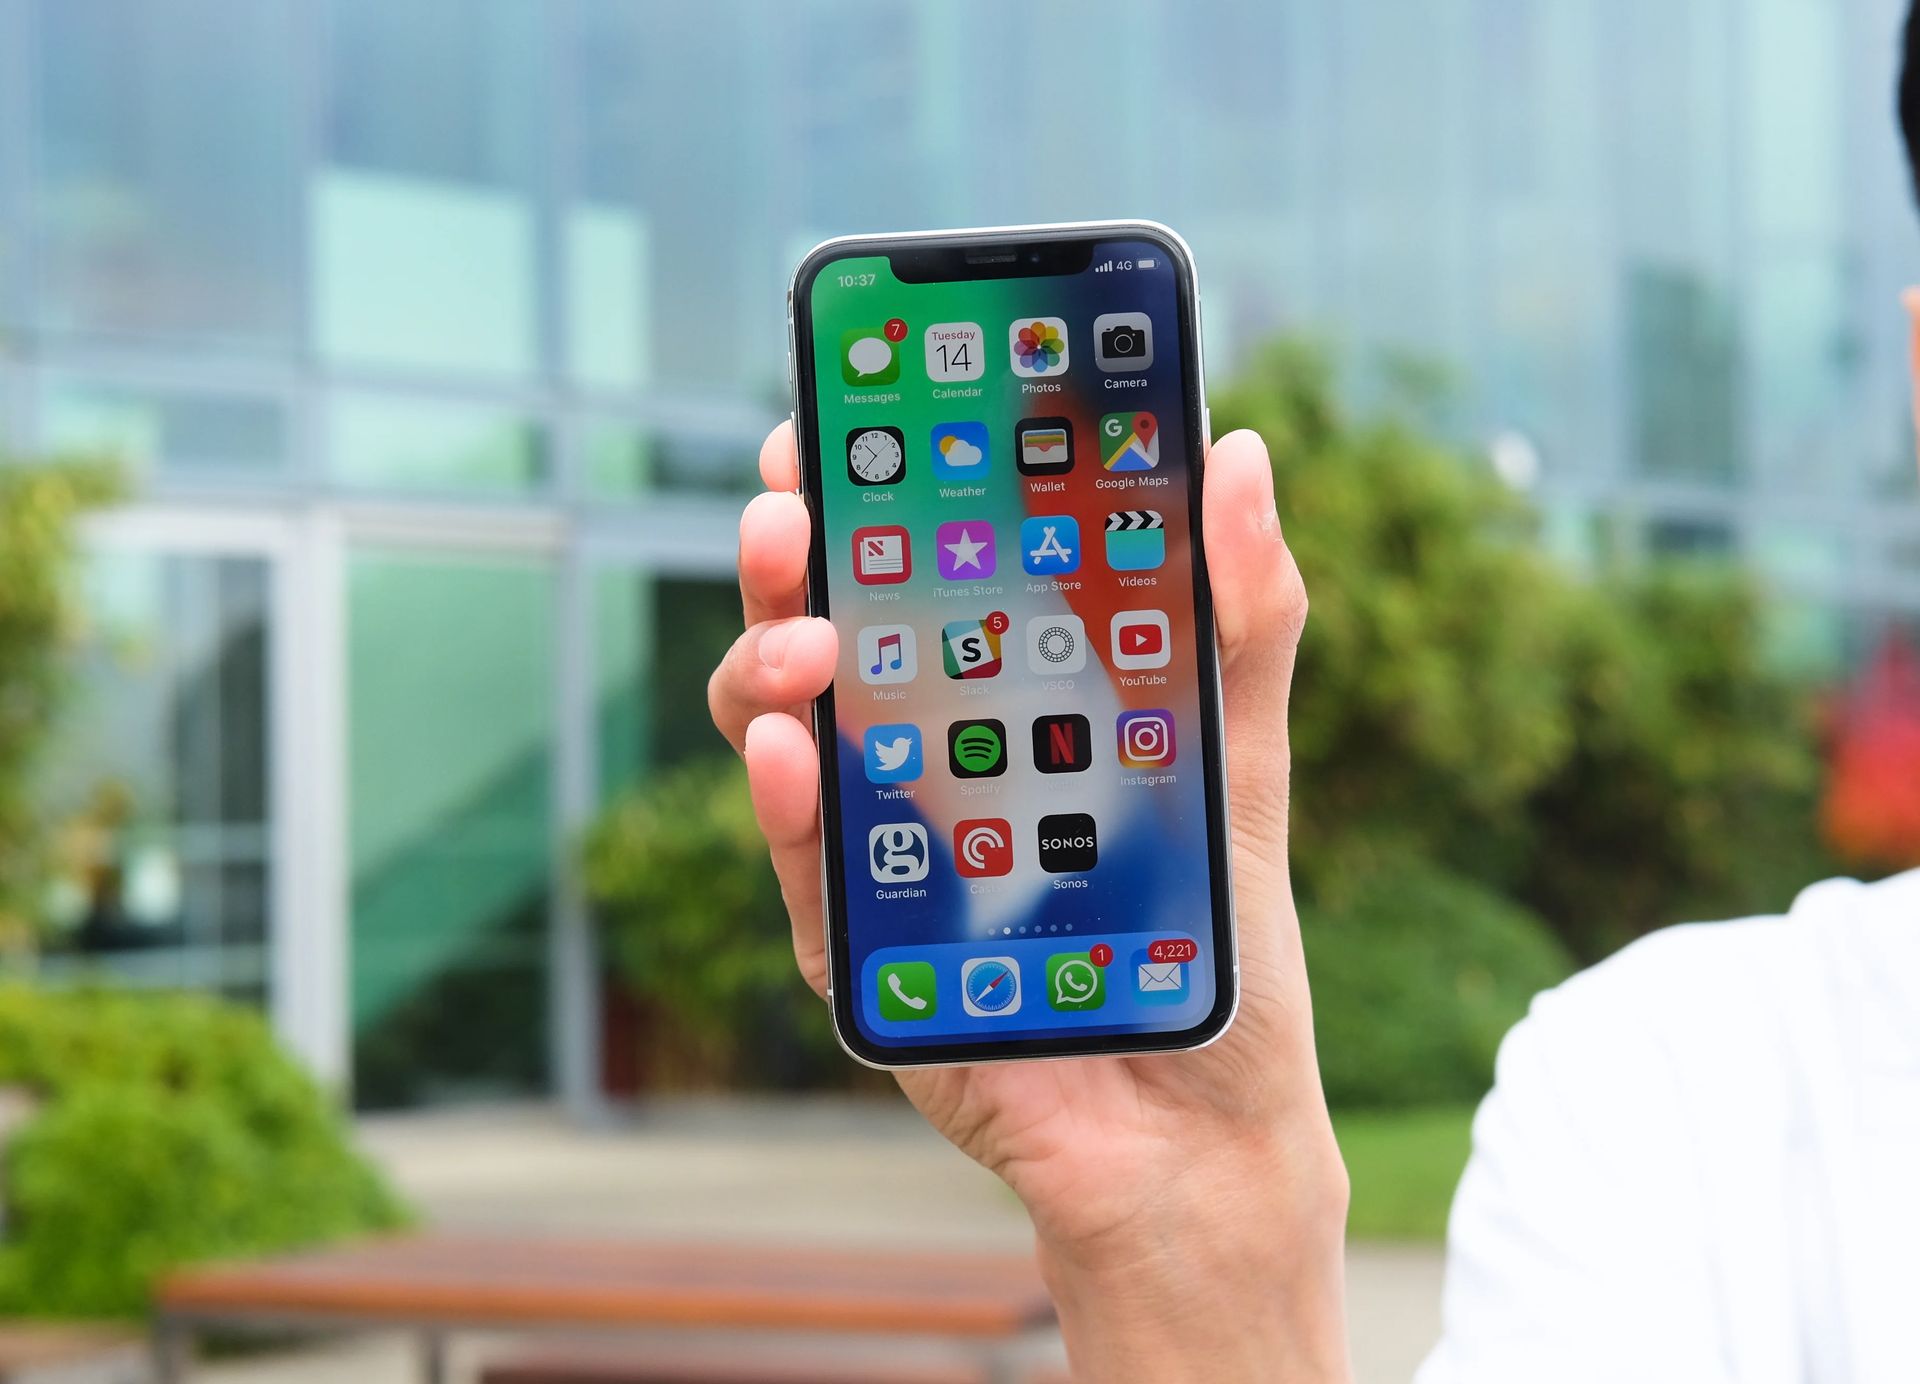 W tym artykule omówimy pozew Apple iPhone dotyczący problemów z baterią, a także sposób uzyskania pieniędzy z pozwu Apple, jeśli został on dotknięty.